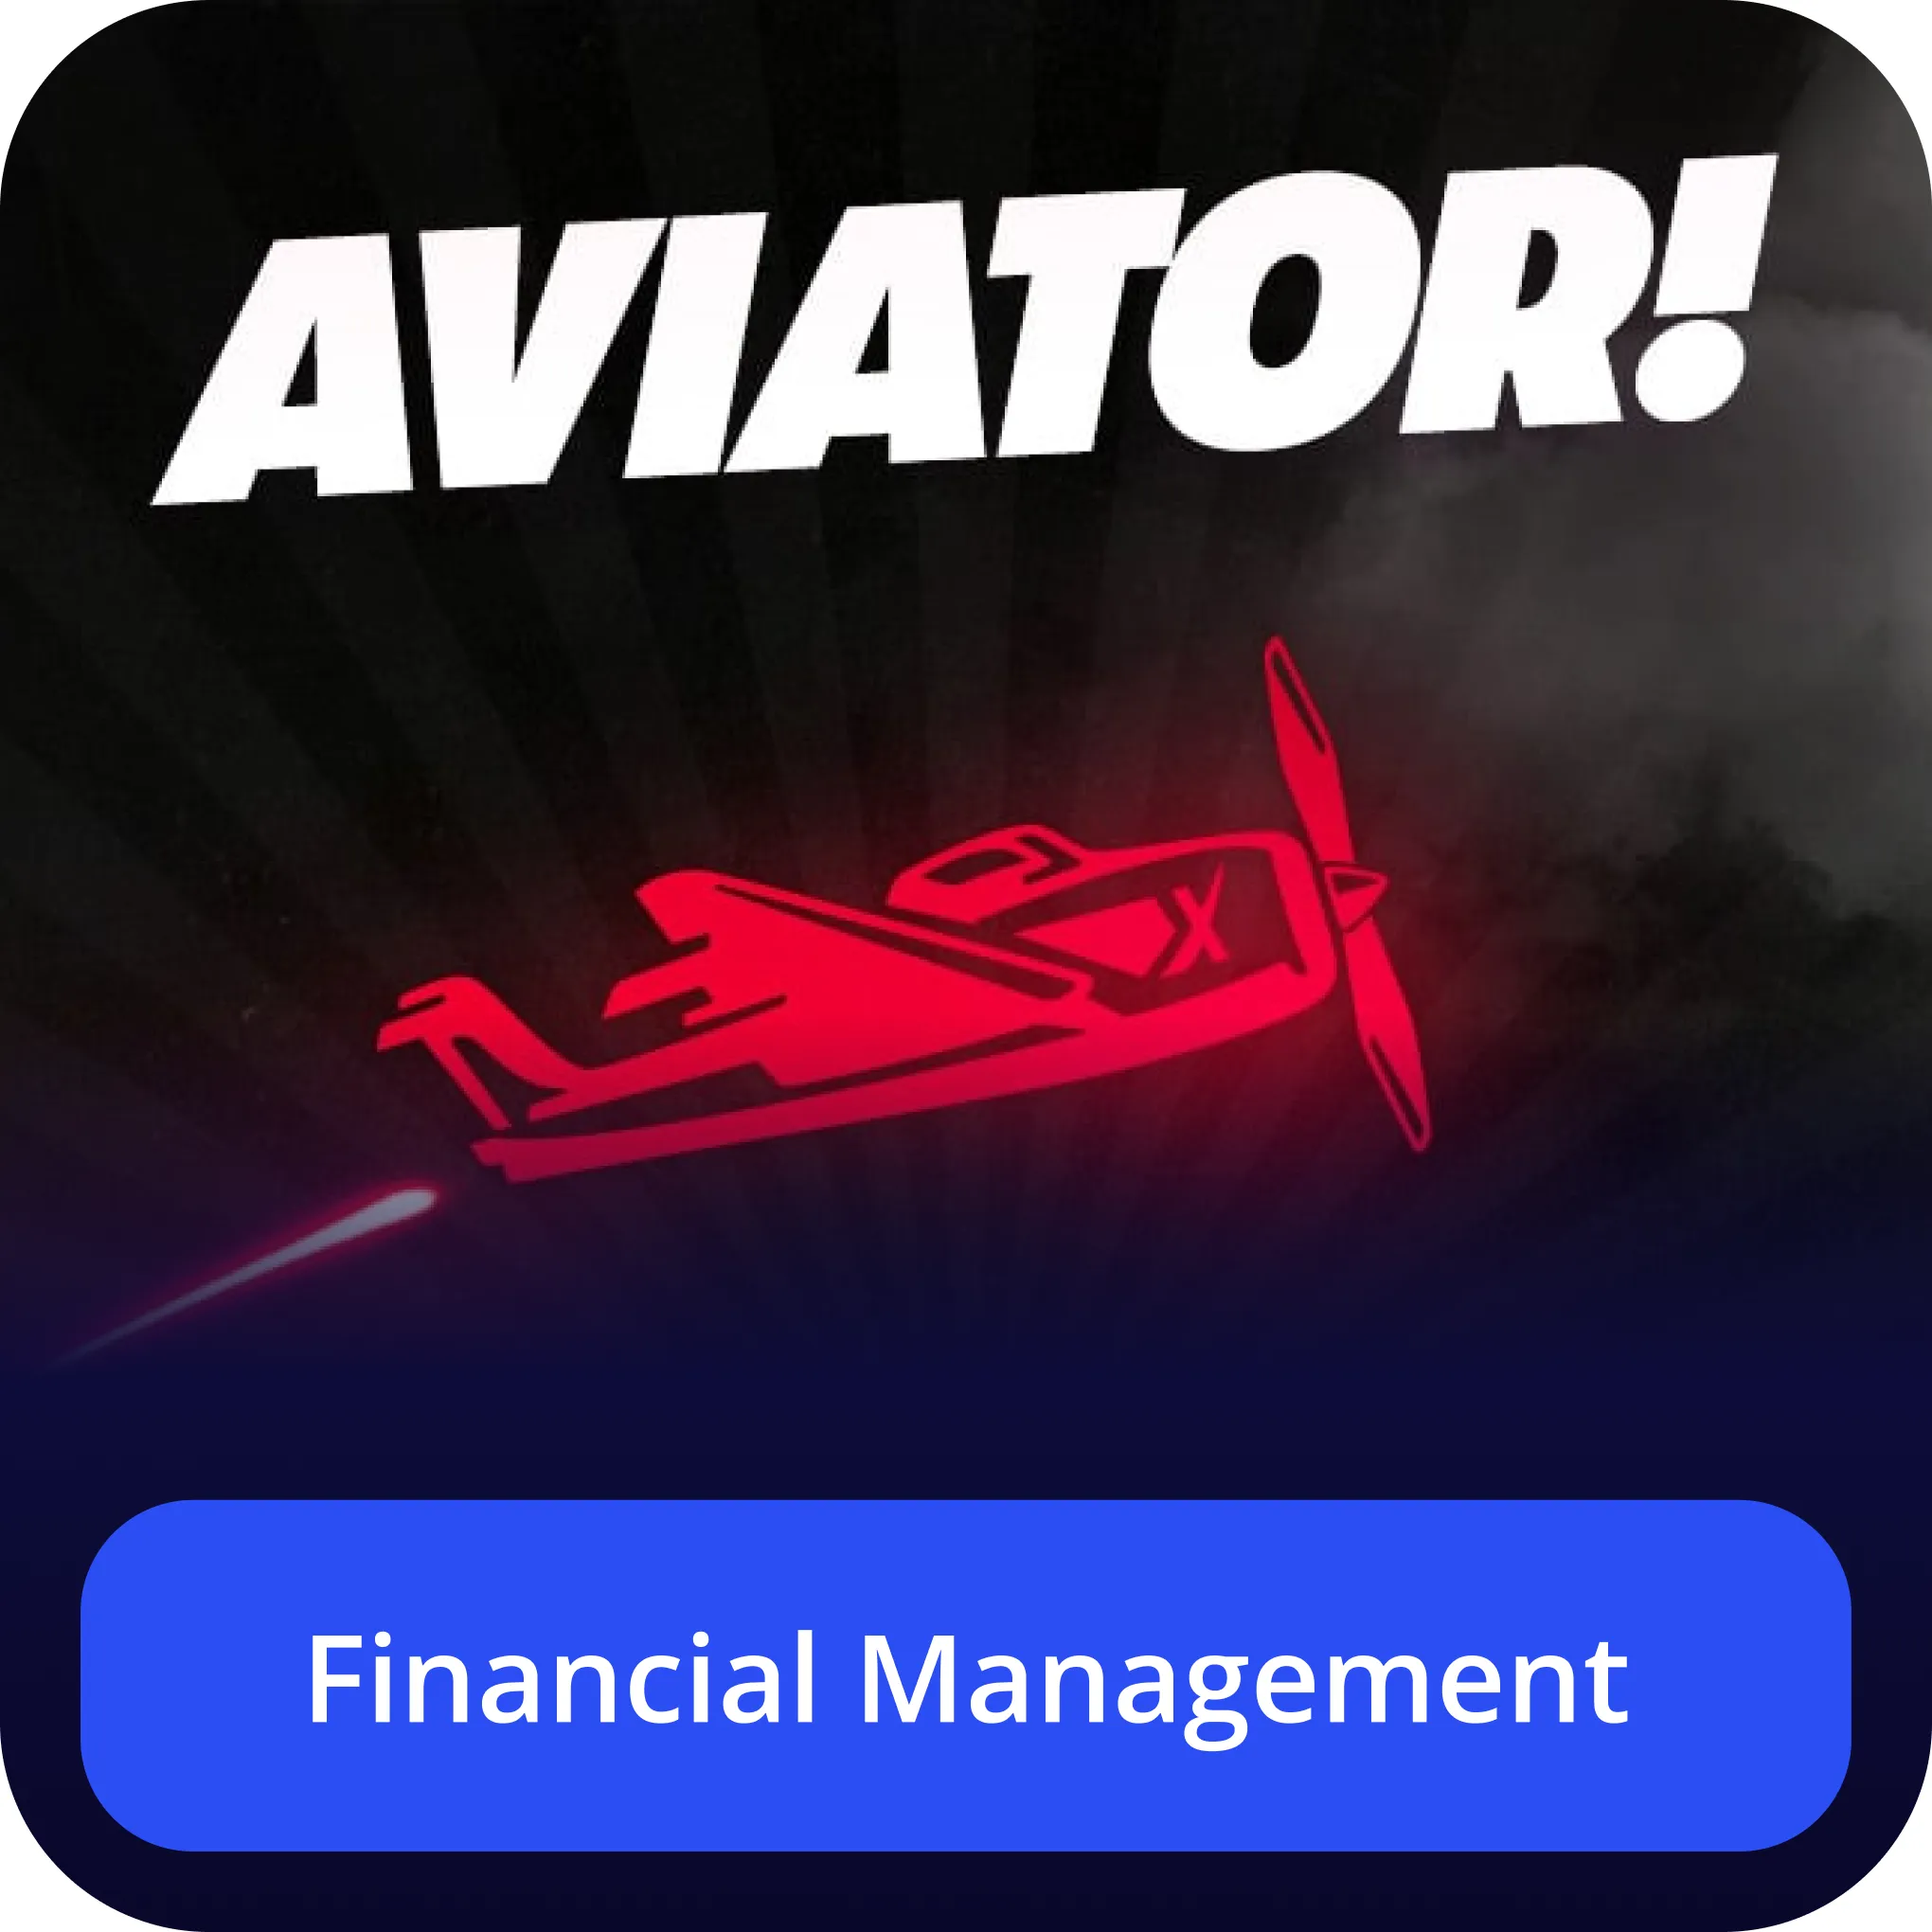 aviator 4rabet financial management